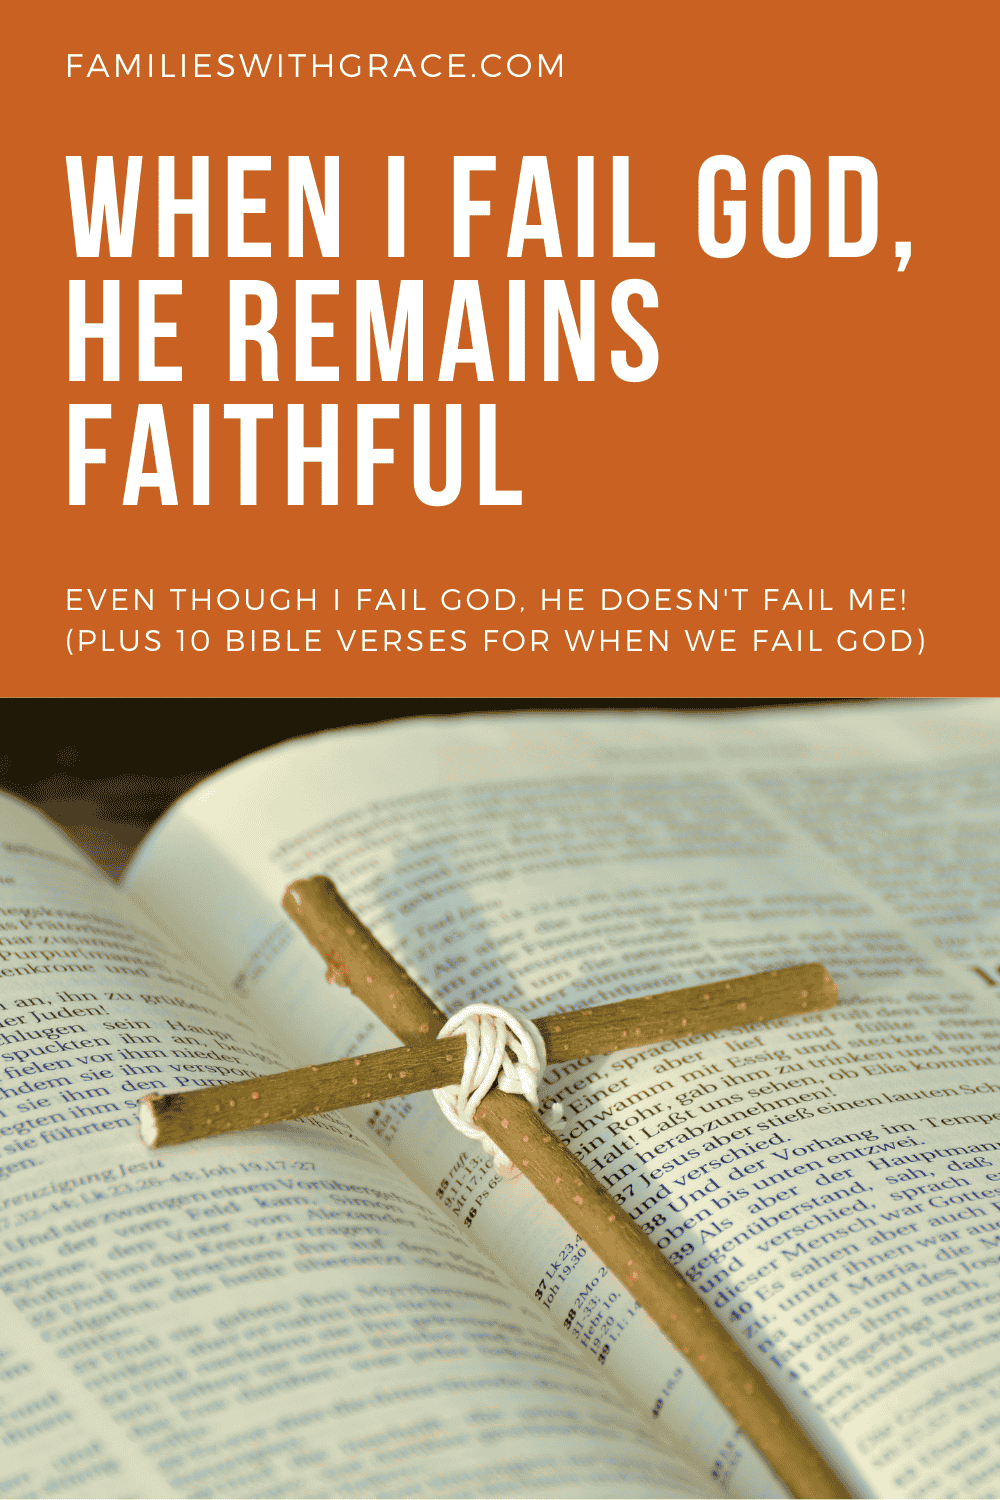 When I fail God, He remains faithful